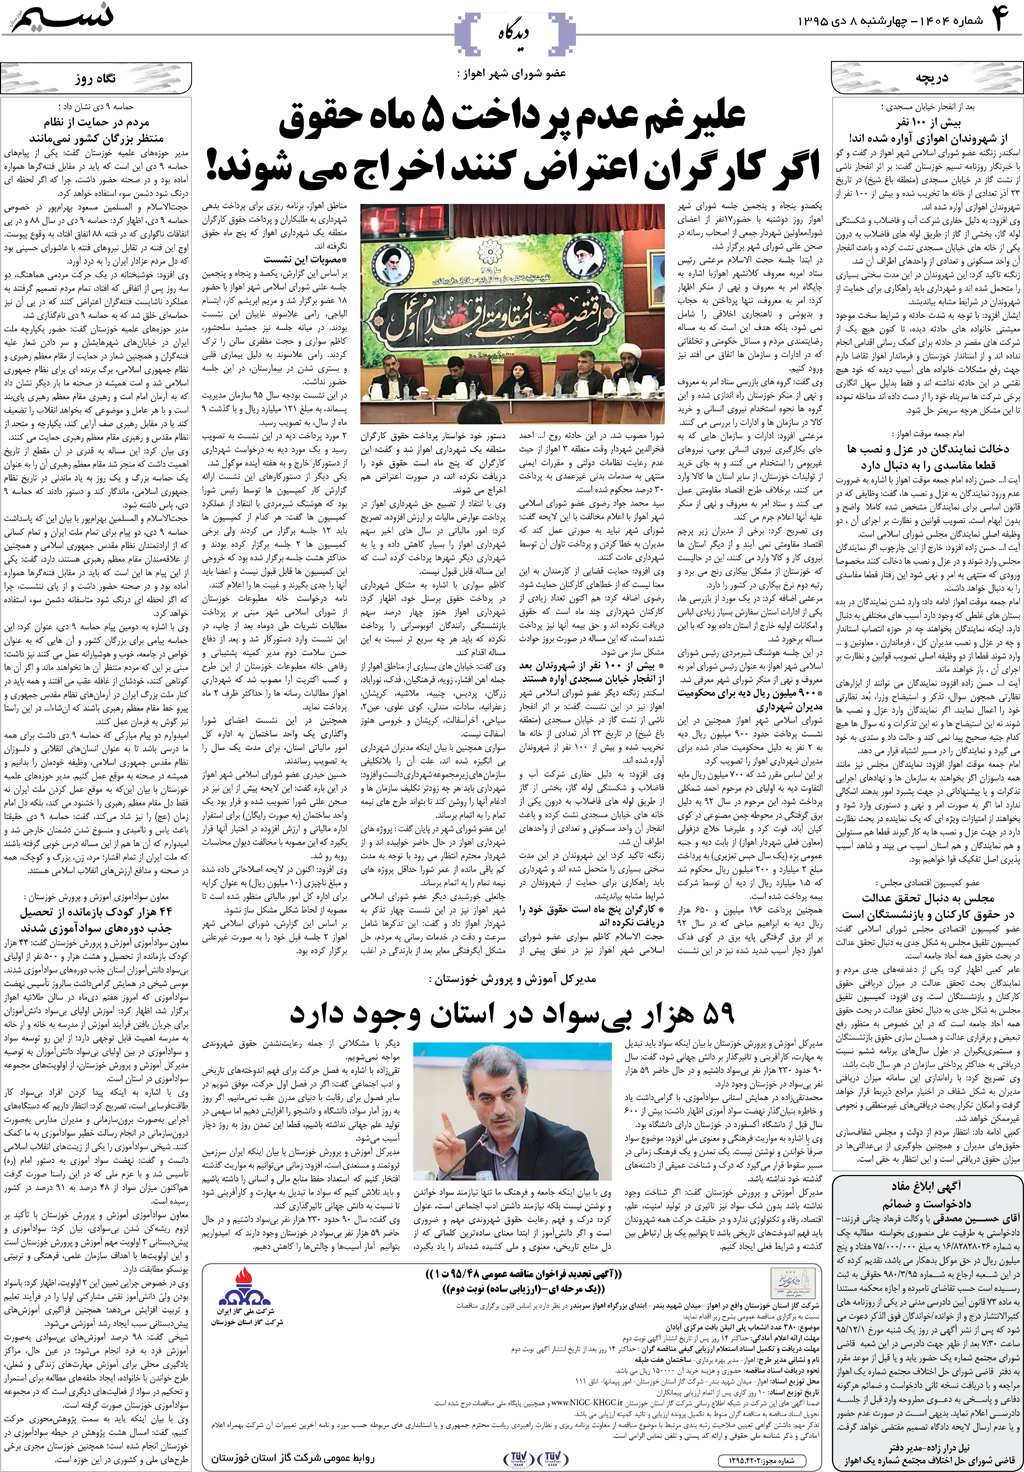 صفحه دیدگاه روزنامه نسیم شماره 1404